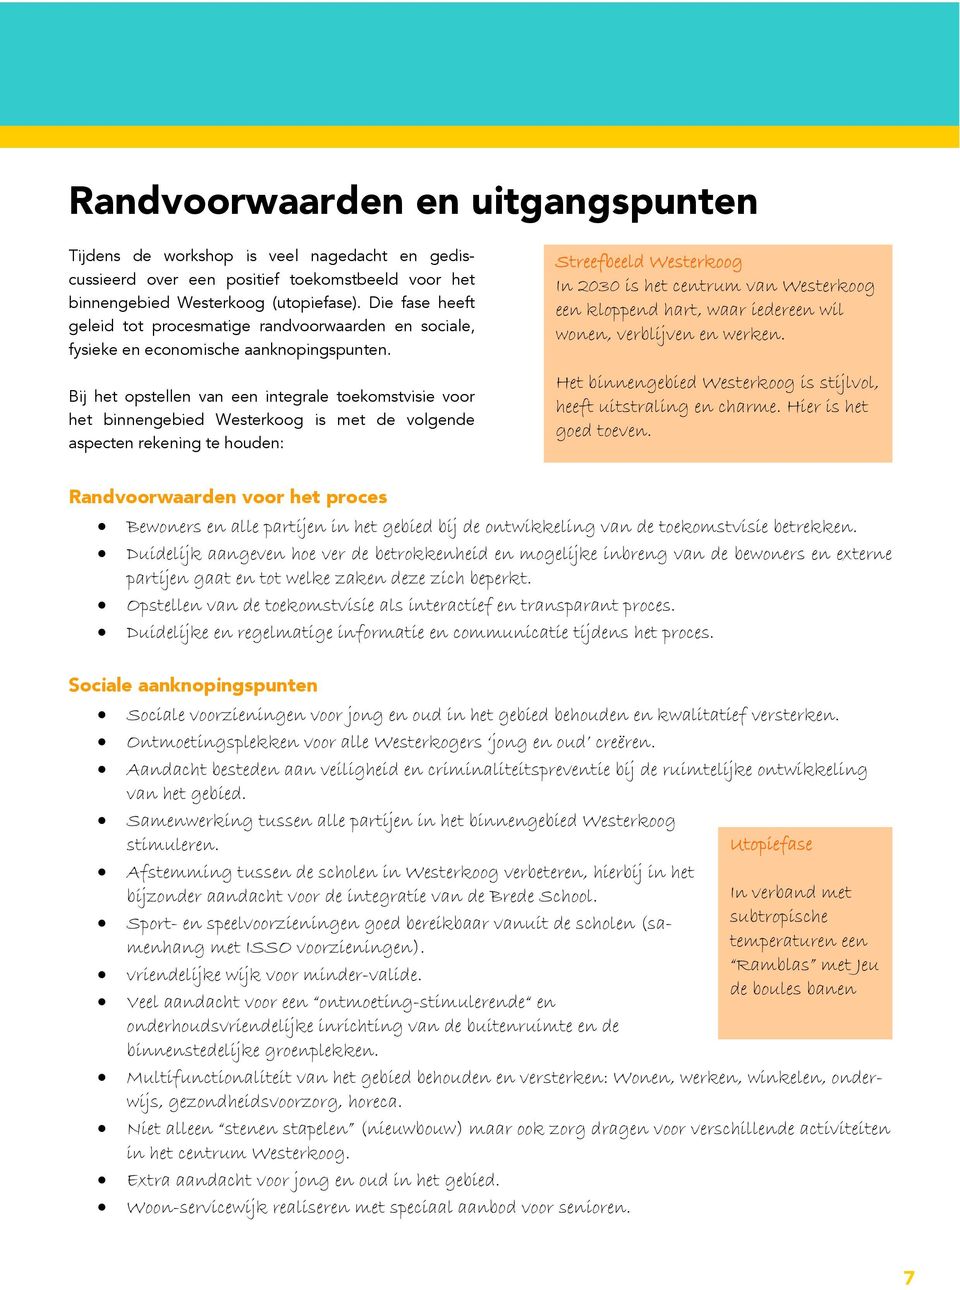 Bij het opstellen van een integrale toekomstvisie voor het binnengebied Westerkoog is met de volgende aspecten rekening te houden: Streefbeeld Westerkoog In 2030 is het centrum van Westerkoog een